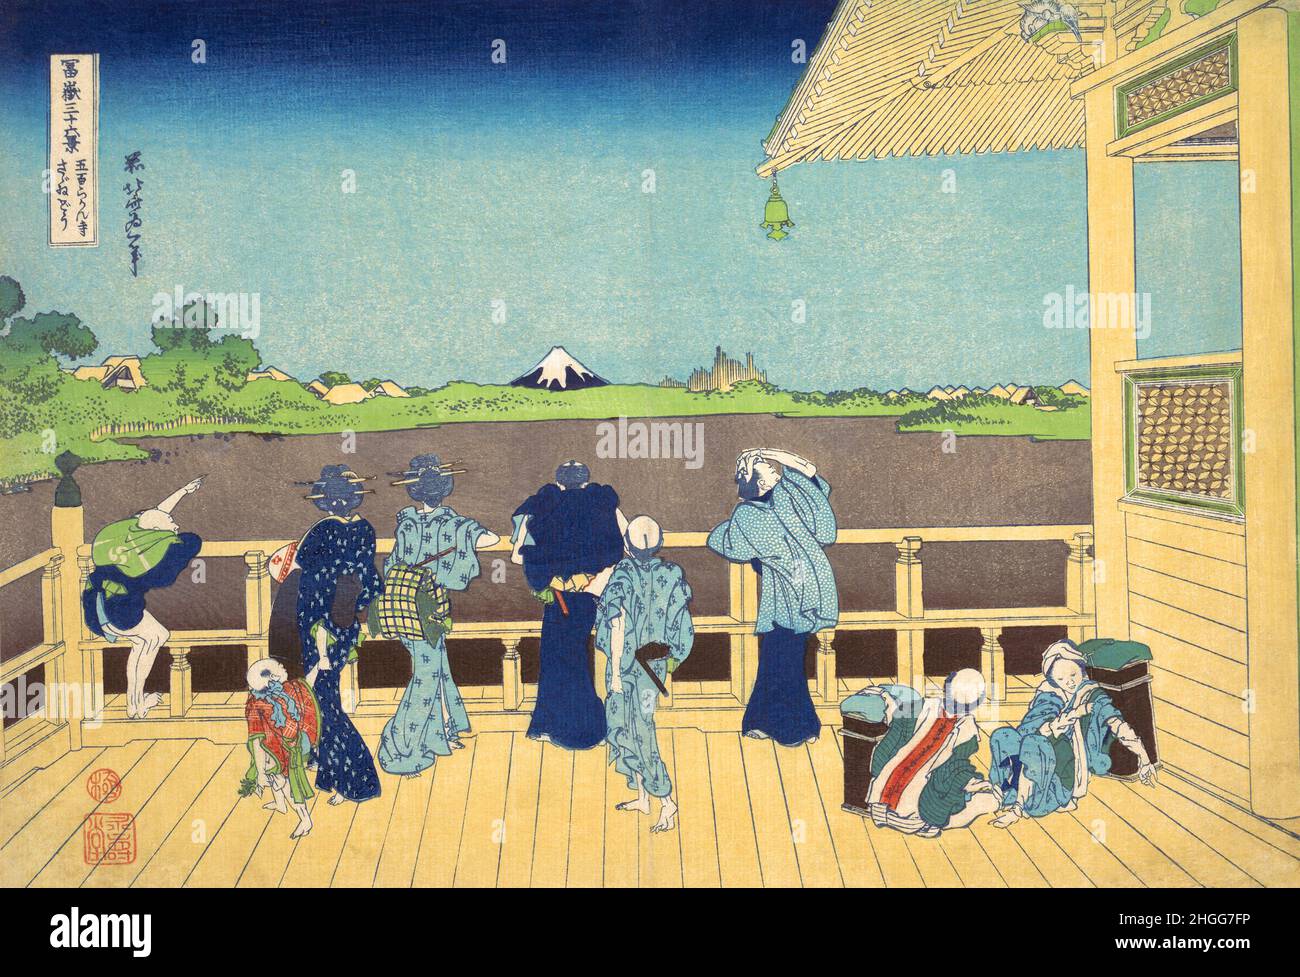 Japan: ‘Sazai Hall - Tempel der fünfhundert Rakan’. Ukiyo-e Holzschnitt aus der Serie ‘Thirty-Six views of Mount Fuji’ von Katsushika Hokusai (31. Oktober 1760 - 10. Mai 1849), 1830. ‘Thirty-Six Views of Mount Fuji’ ist eine Serie von Holzschnitten der japanischen Künstlerin Katsushika Hokusai, die „Sukiyo-e“ ‘. Die Serie zeigt den Fuji in unterschiedlichen Jahreszeiten und Wetterbedingungen an verschiedenen Orten und Entfernungen. Es besteht tatsächlich aus 46 Drucken, die zwischen 1826 und 1833 entstanden sind. Die ersten 36 wurden in die ursprüngliche Publikation aufgenommen und aufgrund ihrer Popularität kamen 10 weitere hinzu. Stockfoto